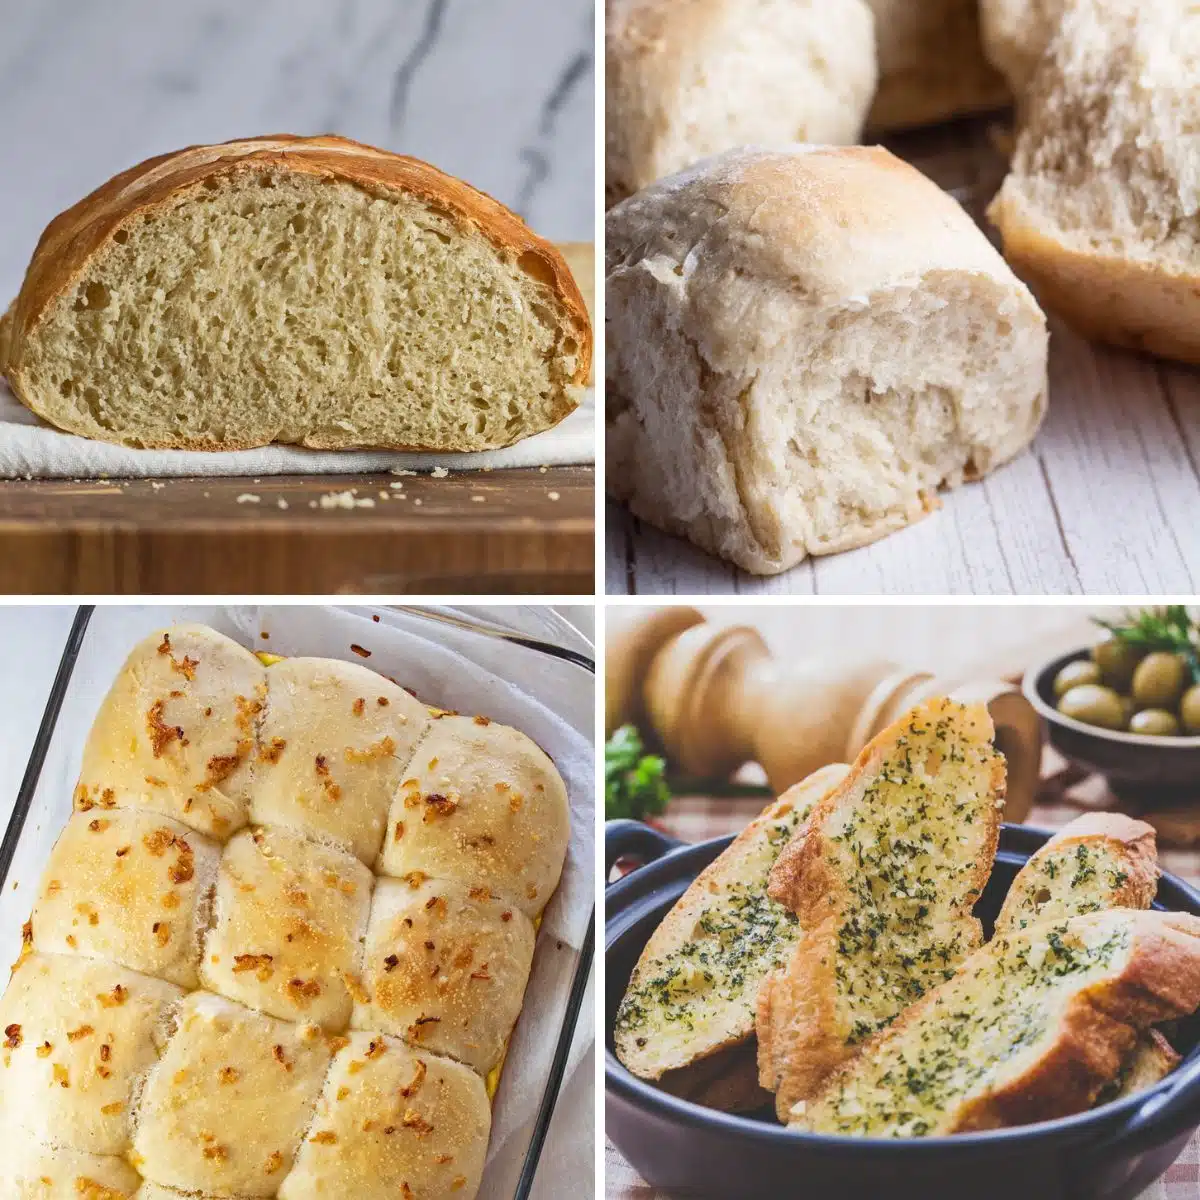 Лучшие булочки на День Благодарения и рецепты хлеба, которые можно испечь и поделиться с праздничными блюдами.